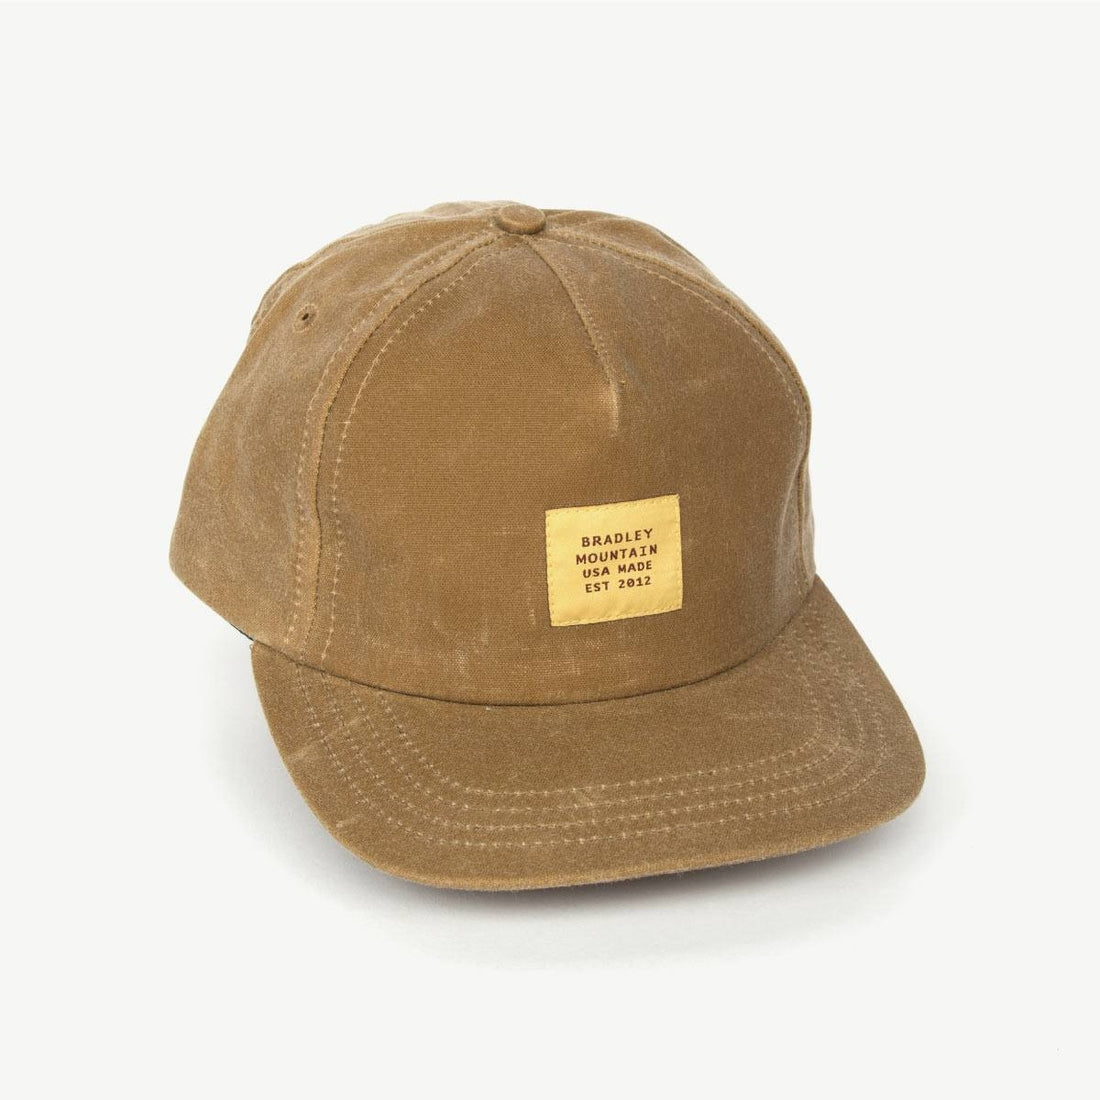 Heritage Camper Hat